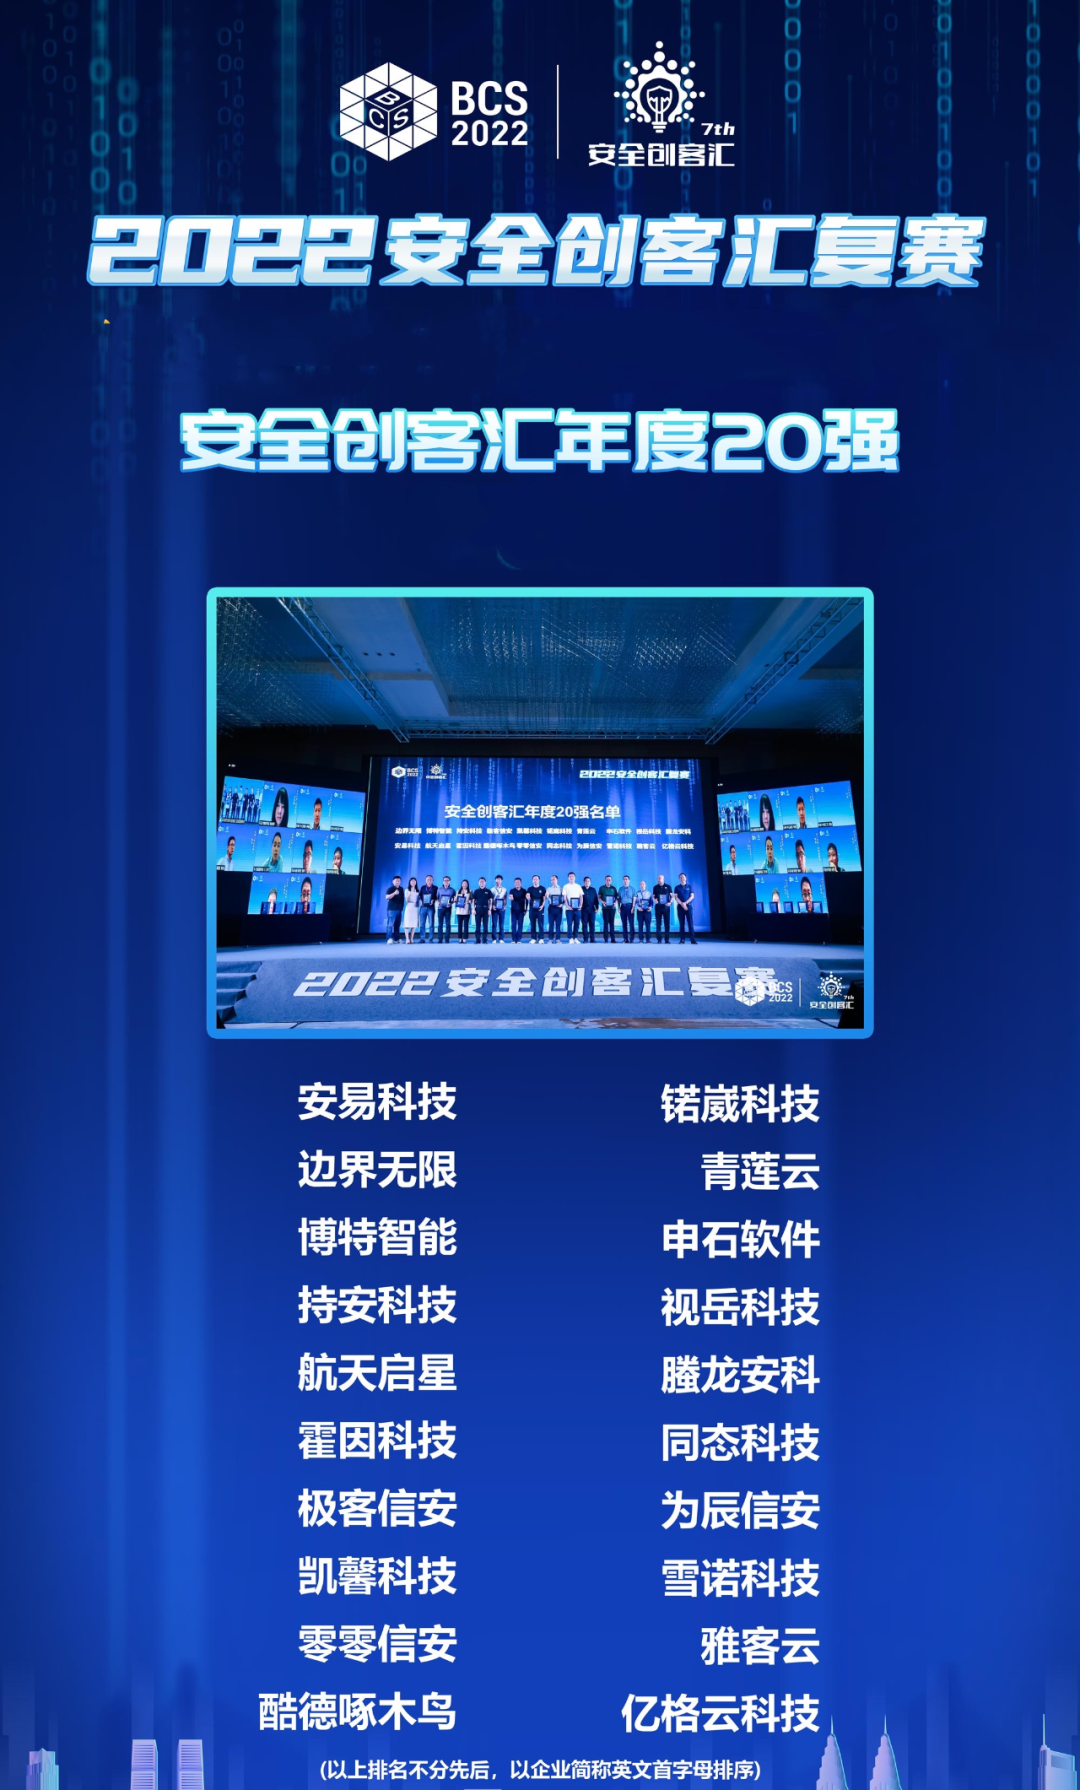 第七届安全创客汇半决赛将在北京金融安全产业园拉开帷幕